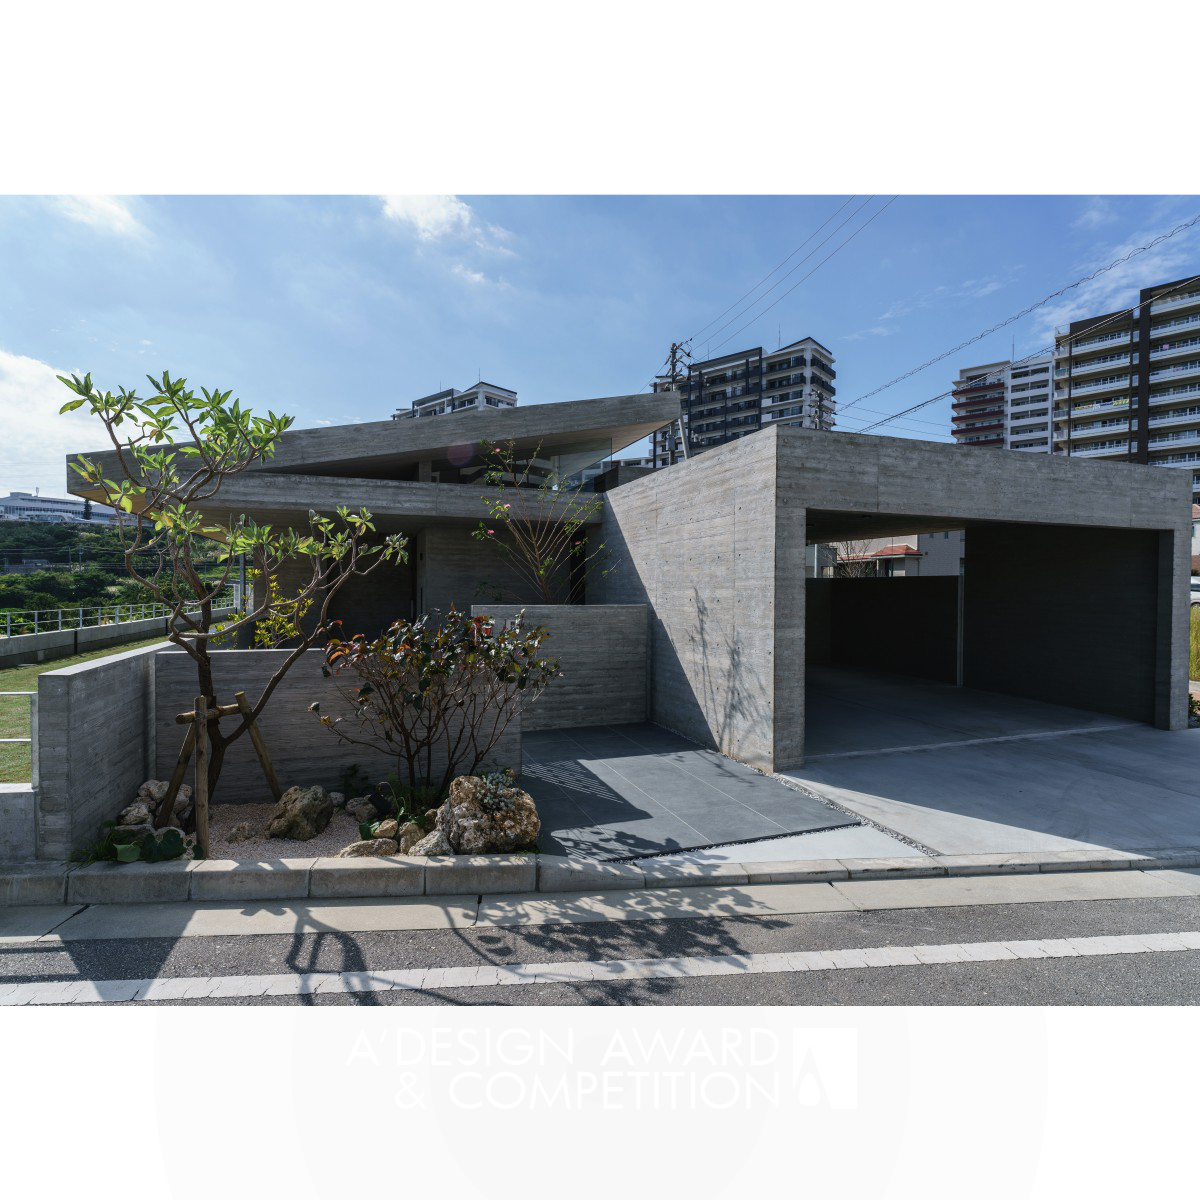 The Three Roof House by Masashi Nakamoto